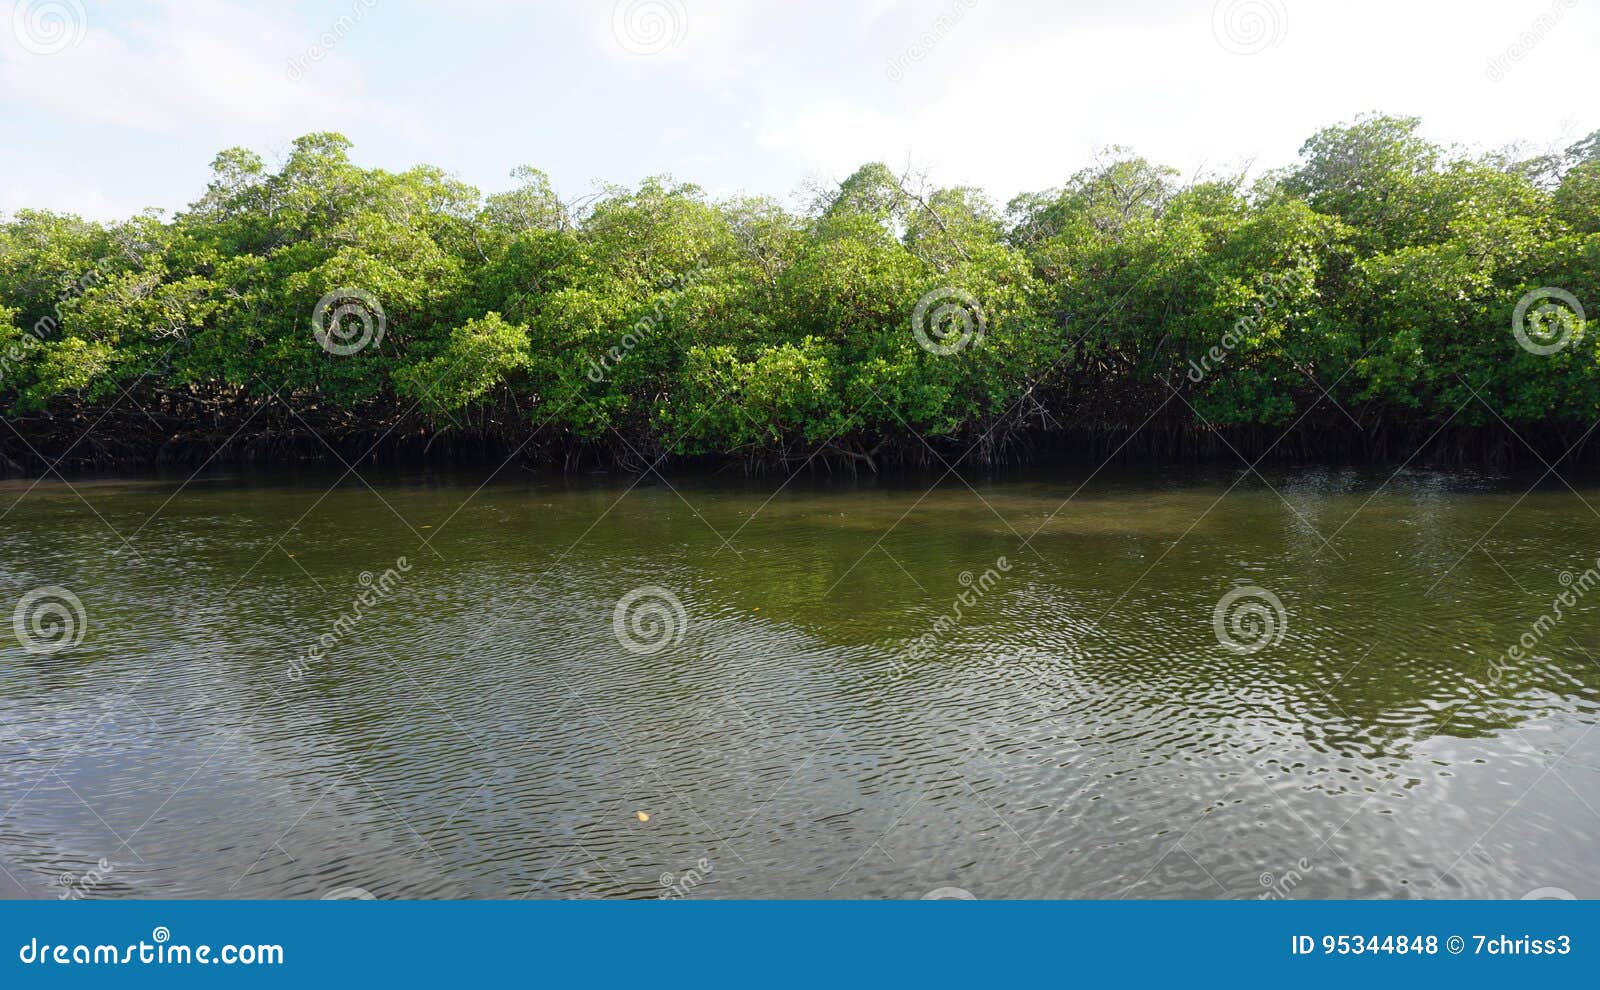 mangroves at punta rusia